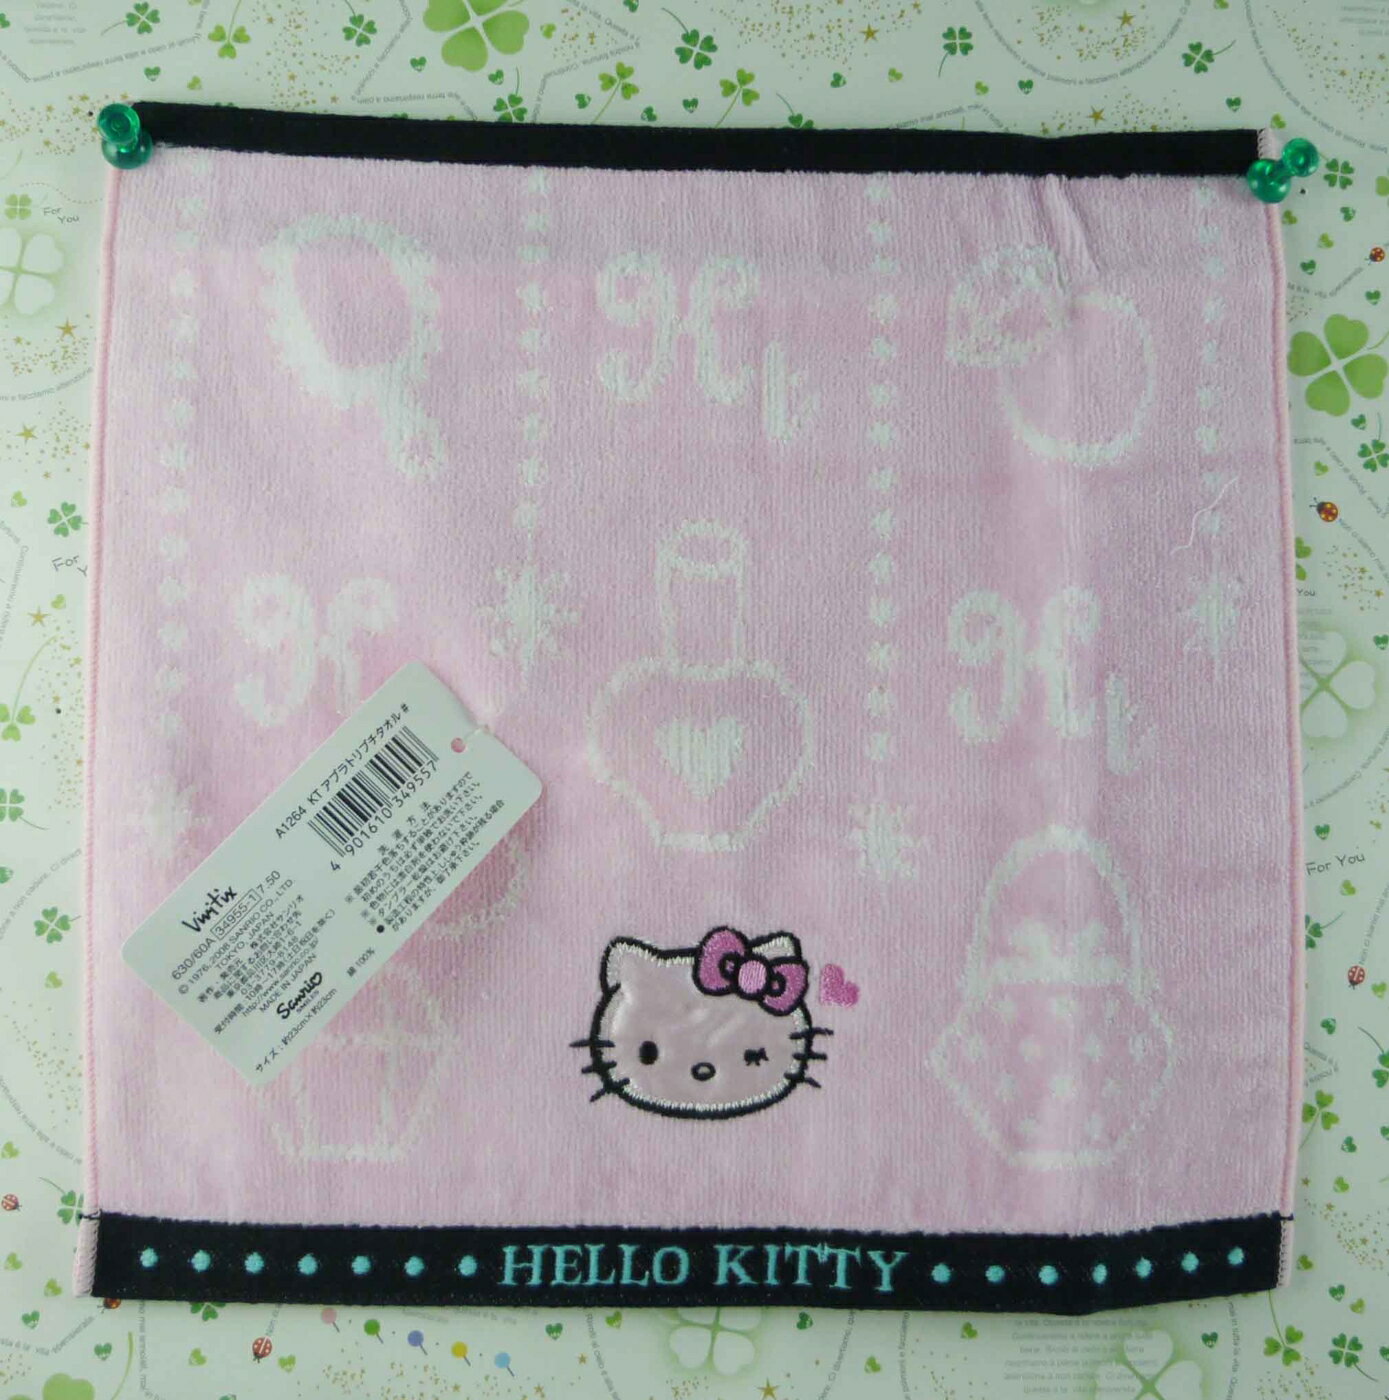 【震撼精品百貨】Hello Kitty 凱蒂貓 方巾-限量款-粉色化妝 震撼日式精品百貨